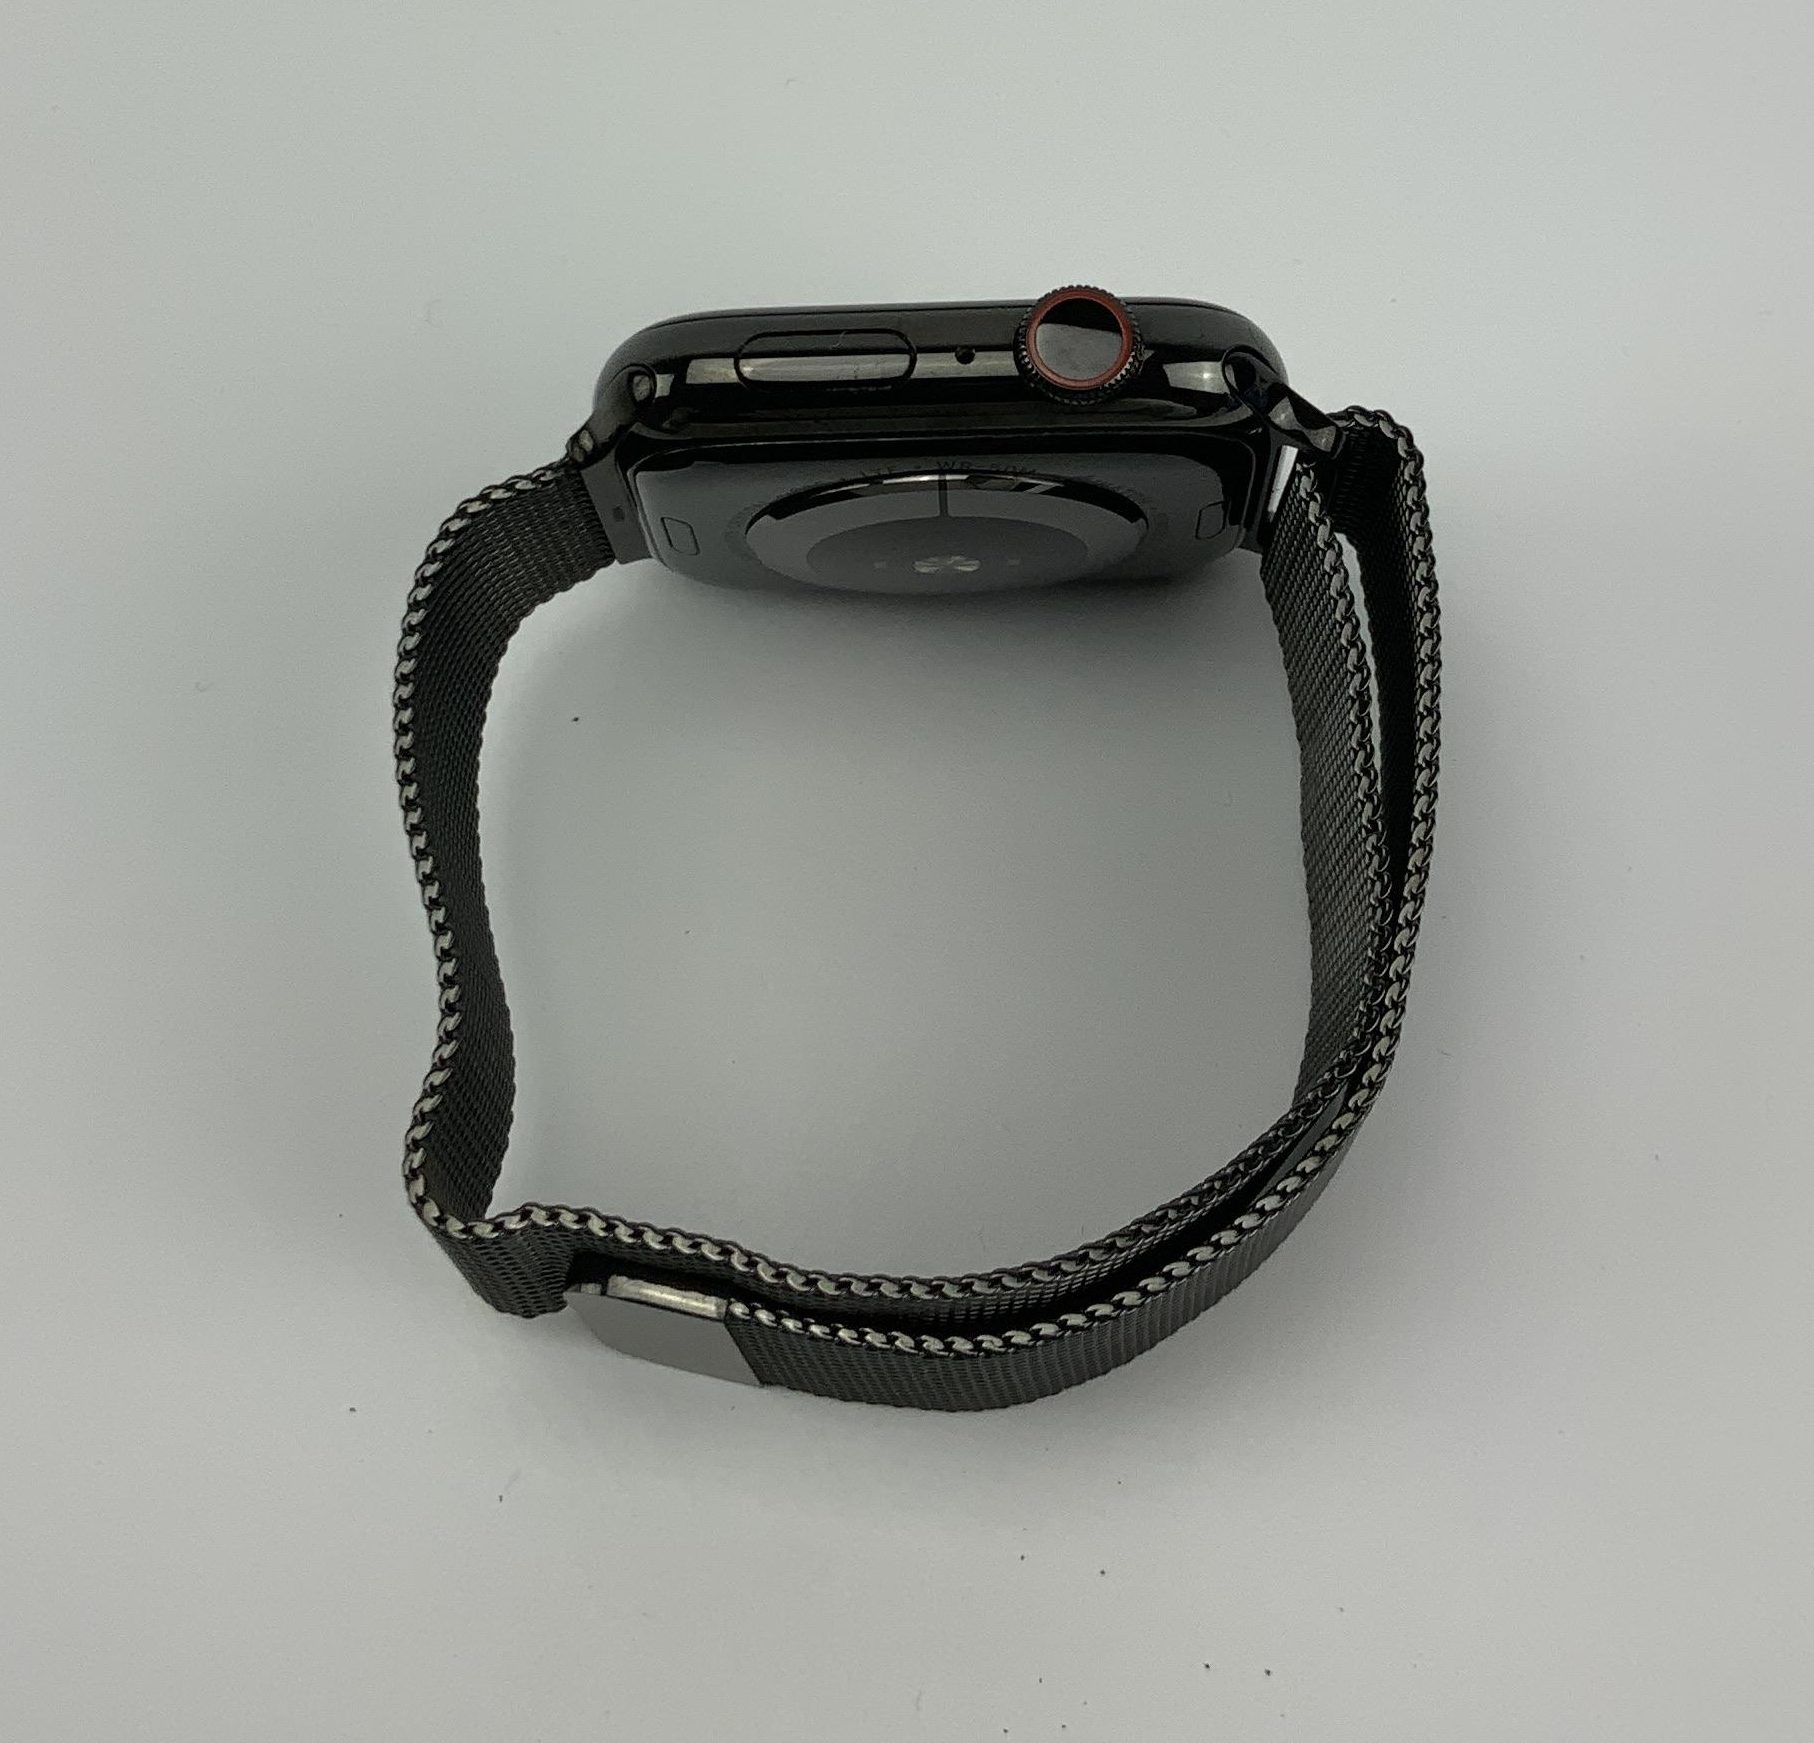 Watch Series 4 Steel Cellular (44mm), Space Black, Space Black Milanese Loop, Kuva 2